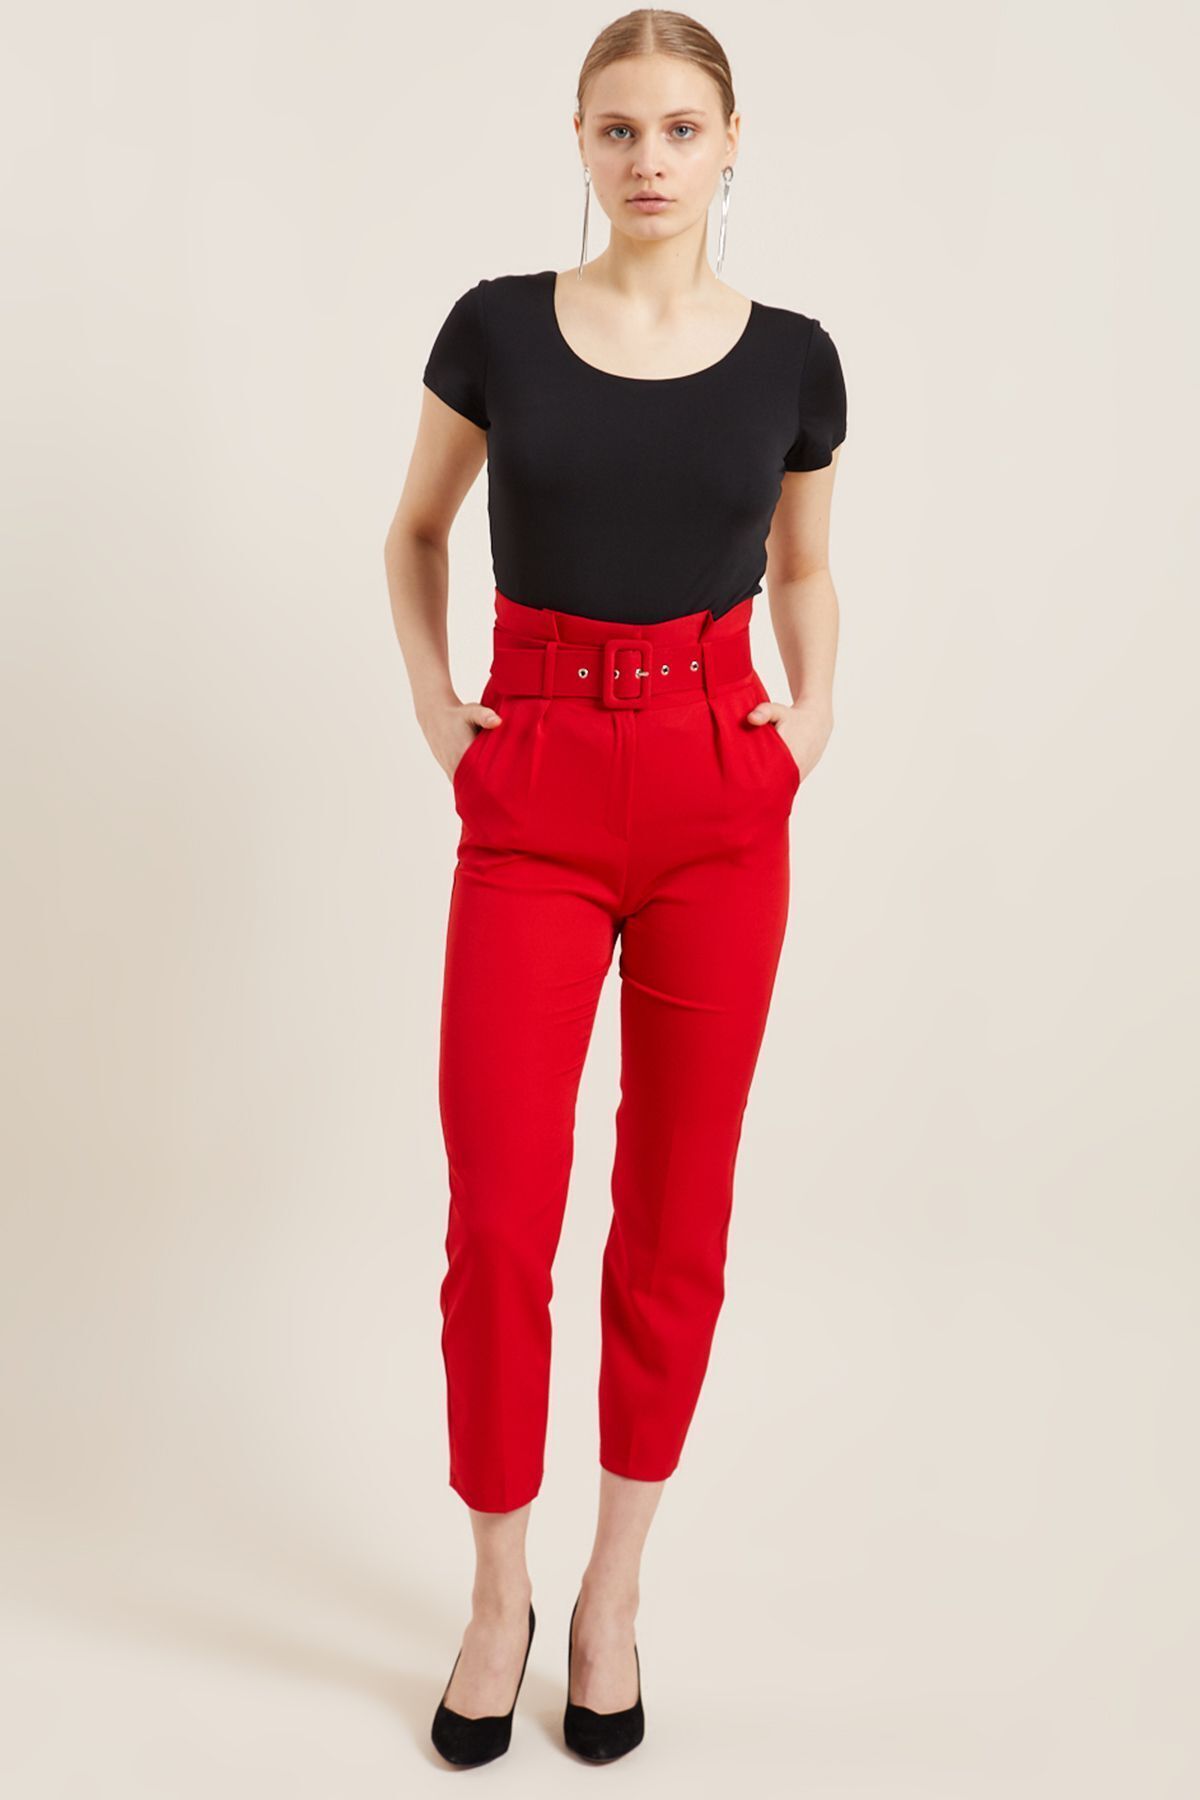 Z GİYİM Kadın Kırmızı Kemerli Yüksek Bel Kumaş Pantolon